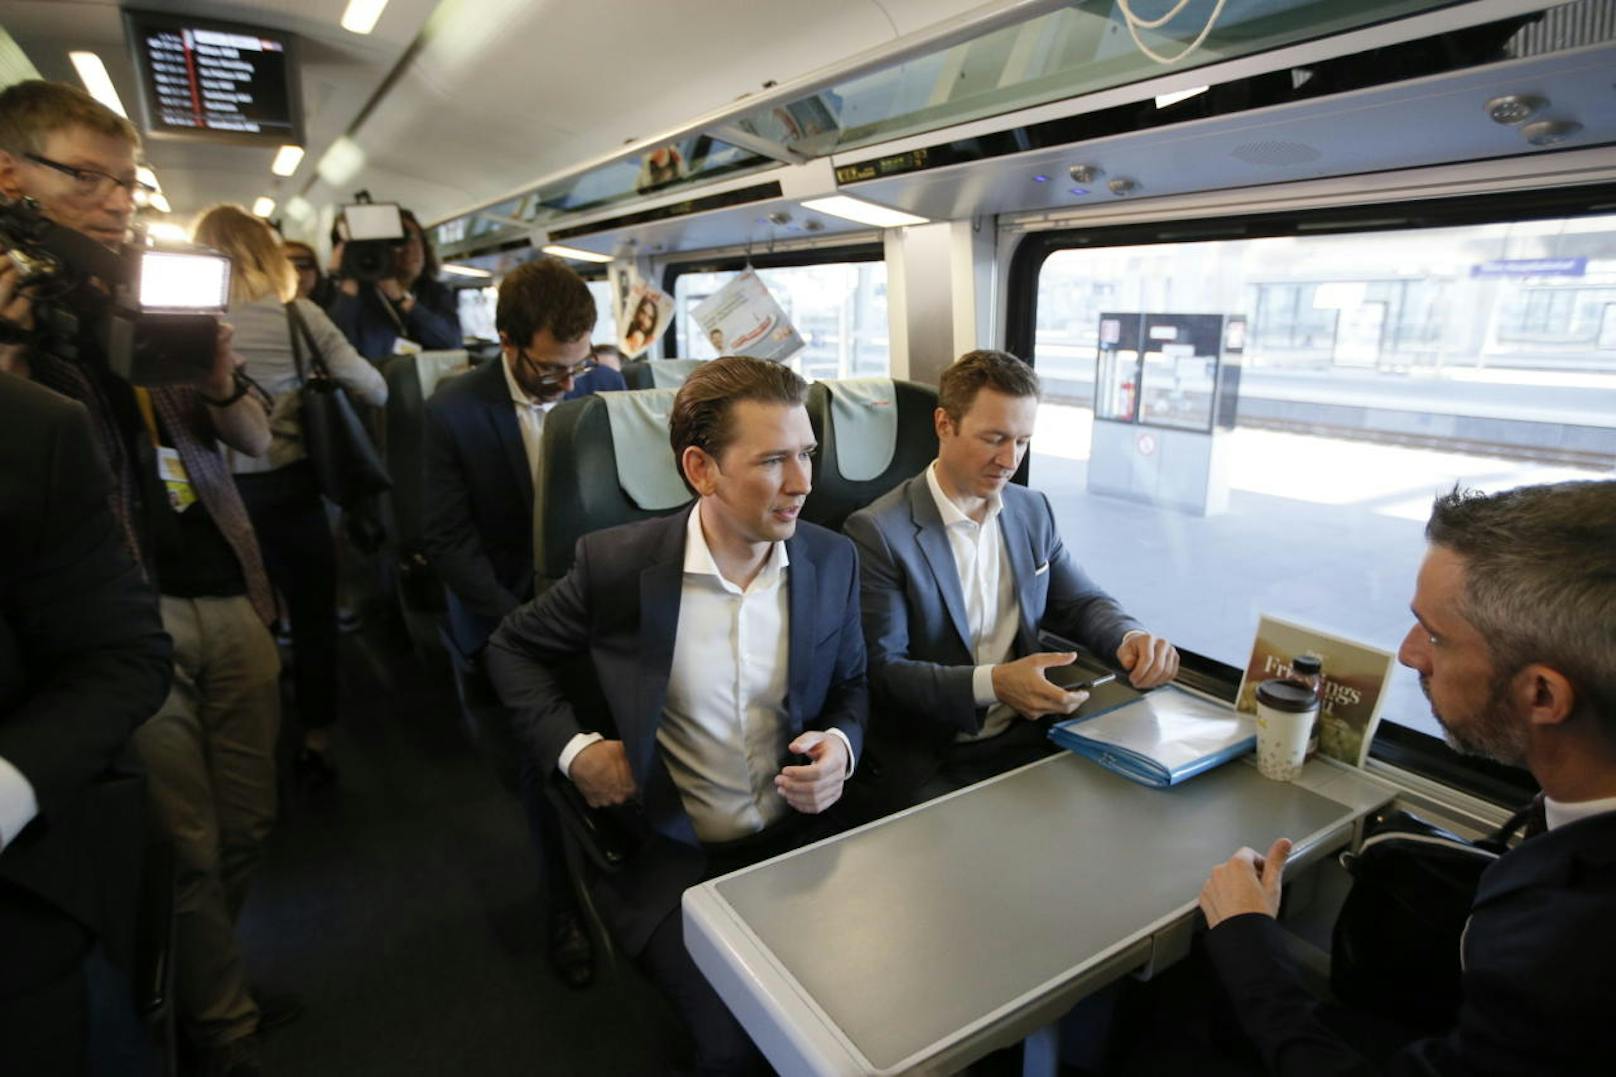 ÖVP-Bundeskanzler Sebastian Kurz reist mit dem Zug zum Treffen mit Bayerns Ministerpräsident Markus Söder (CSU).